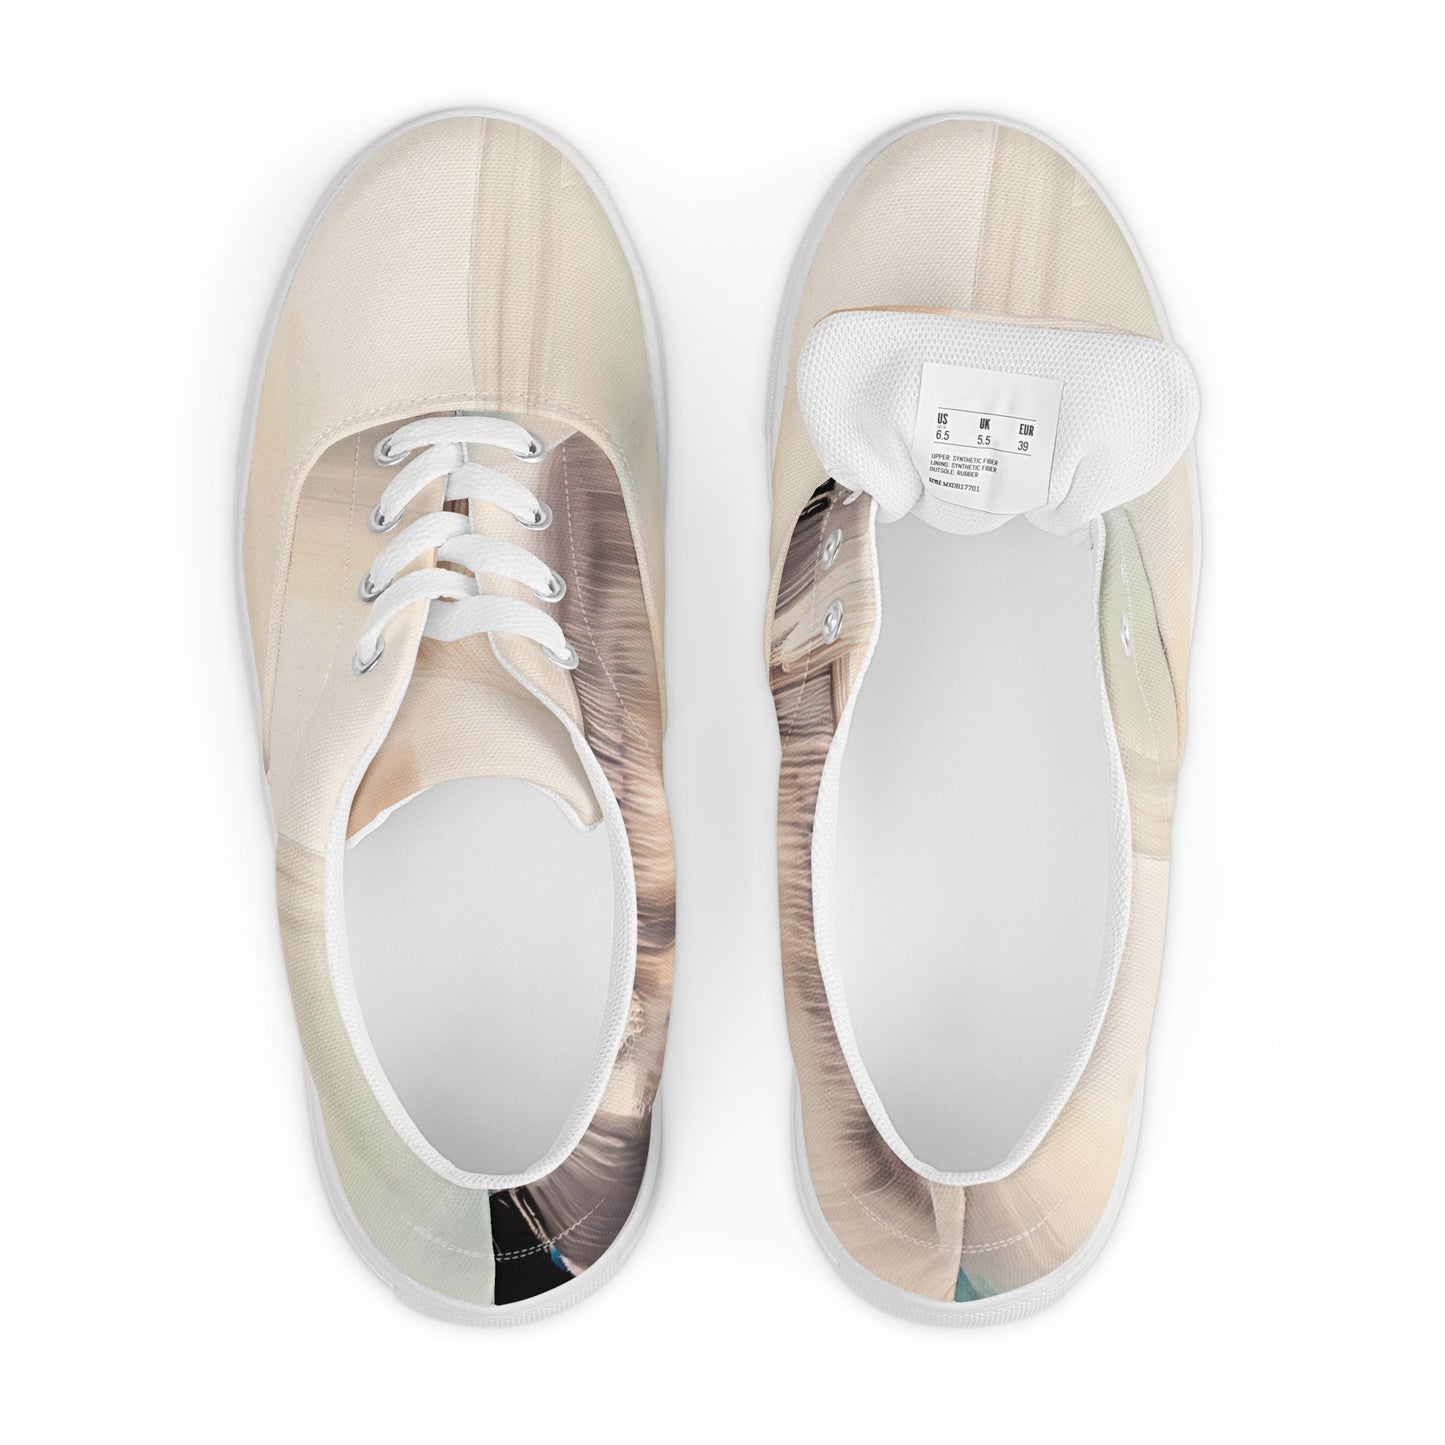 DMV 1352 Avant Garde Men’s lace-up canvas shoes